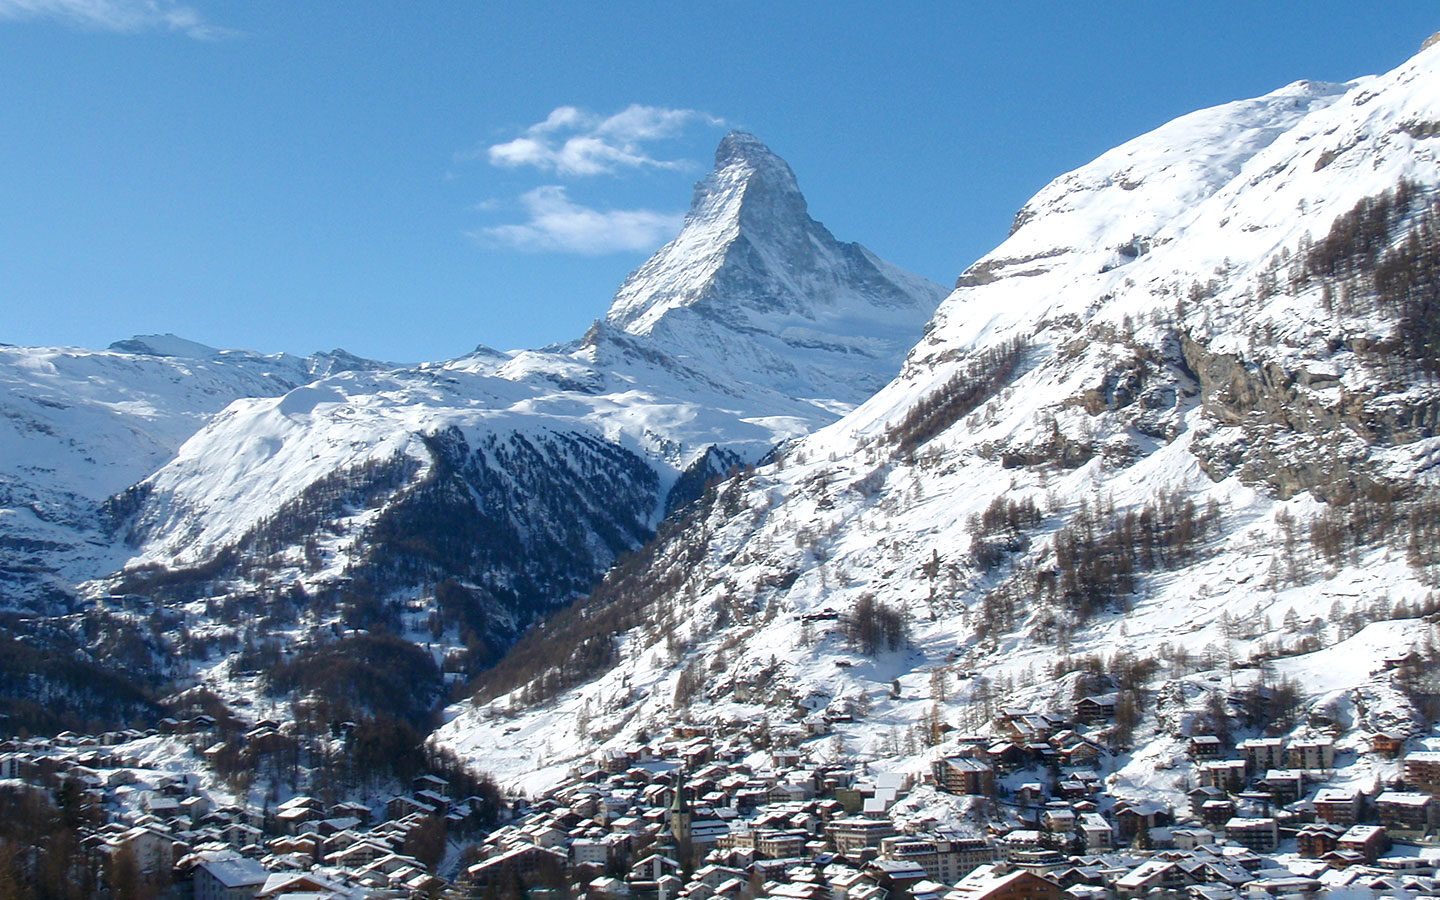 Zermatt in winter and views of the Matterhorn